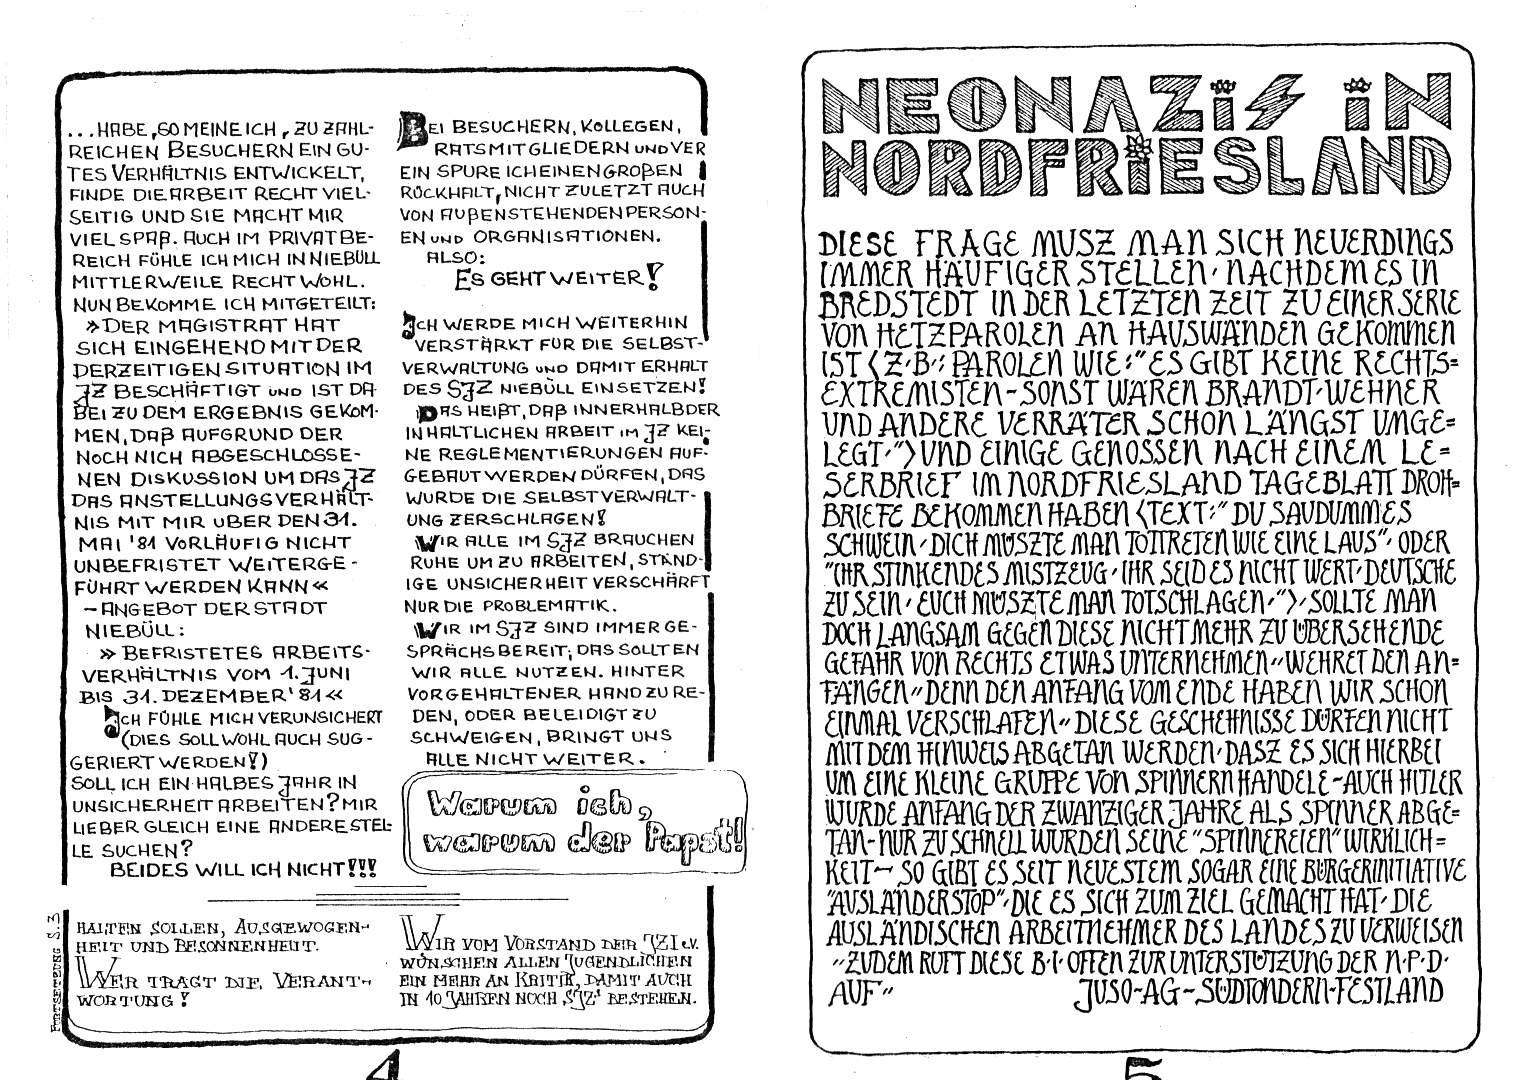 HZ 1 - Seite 4 und 5